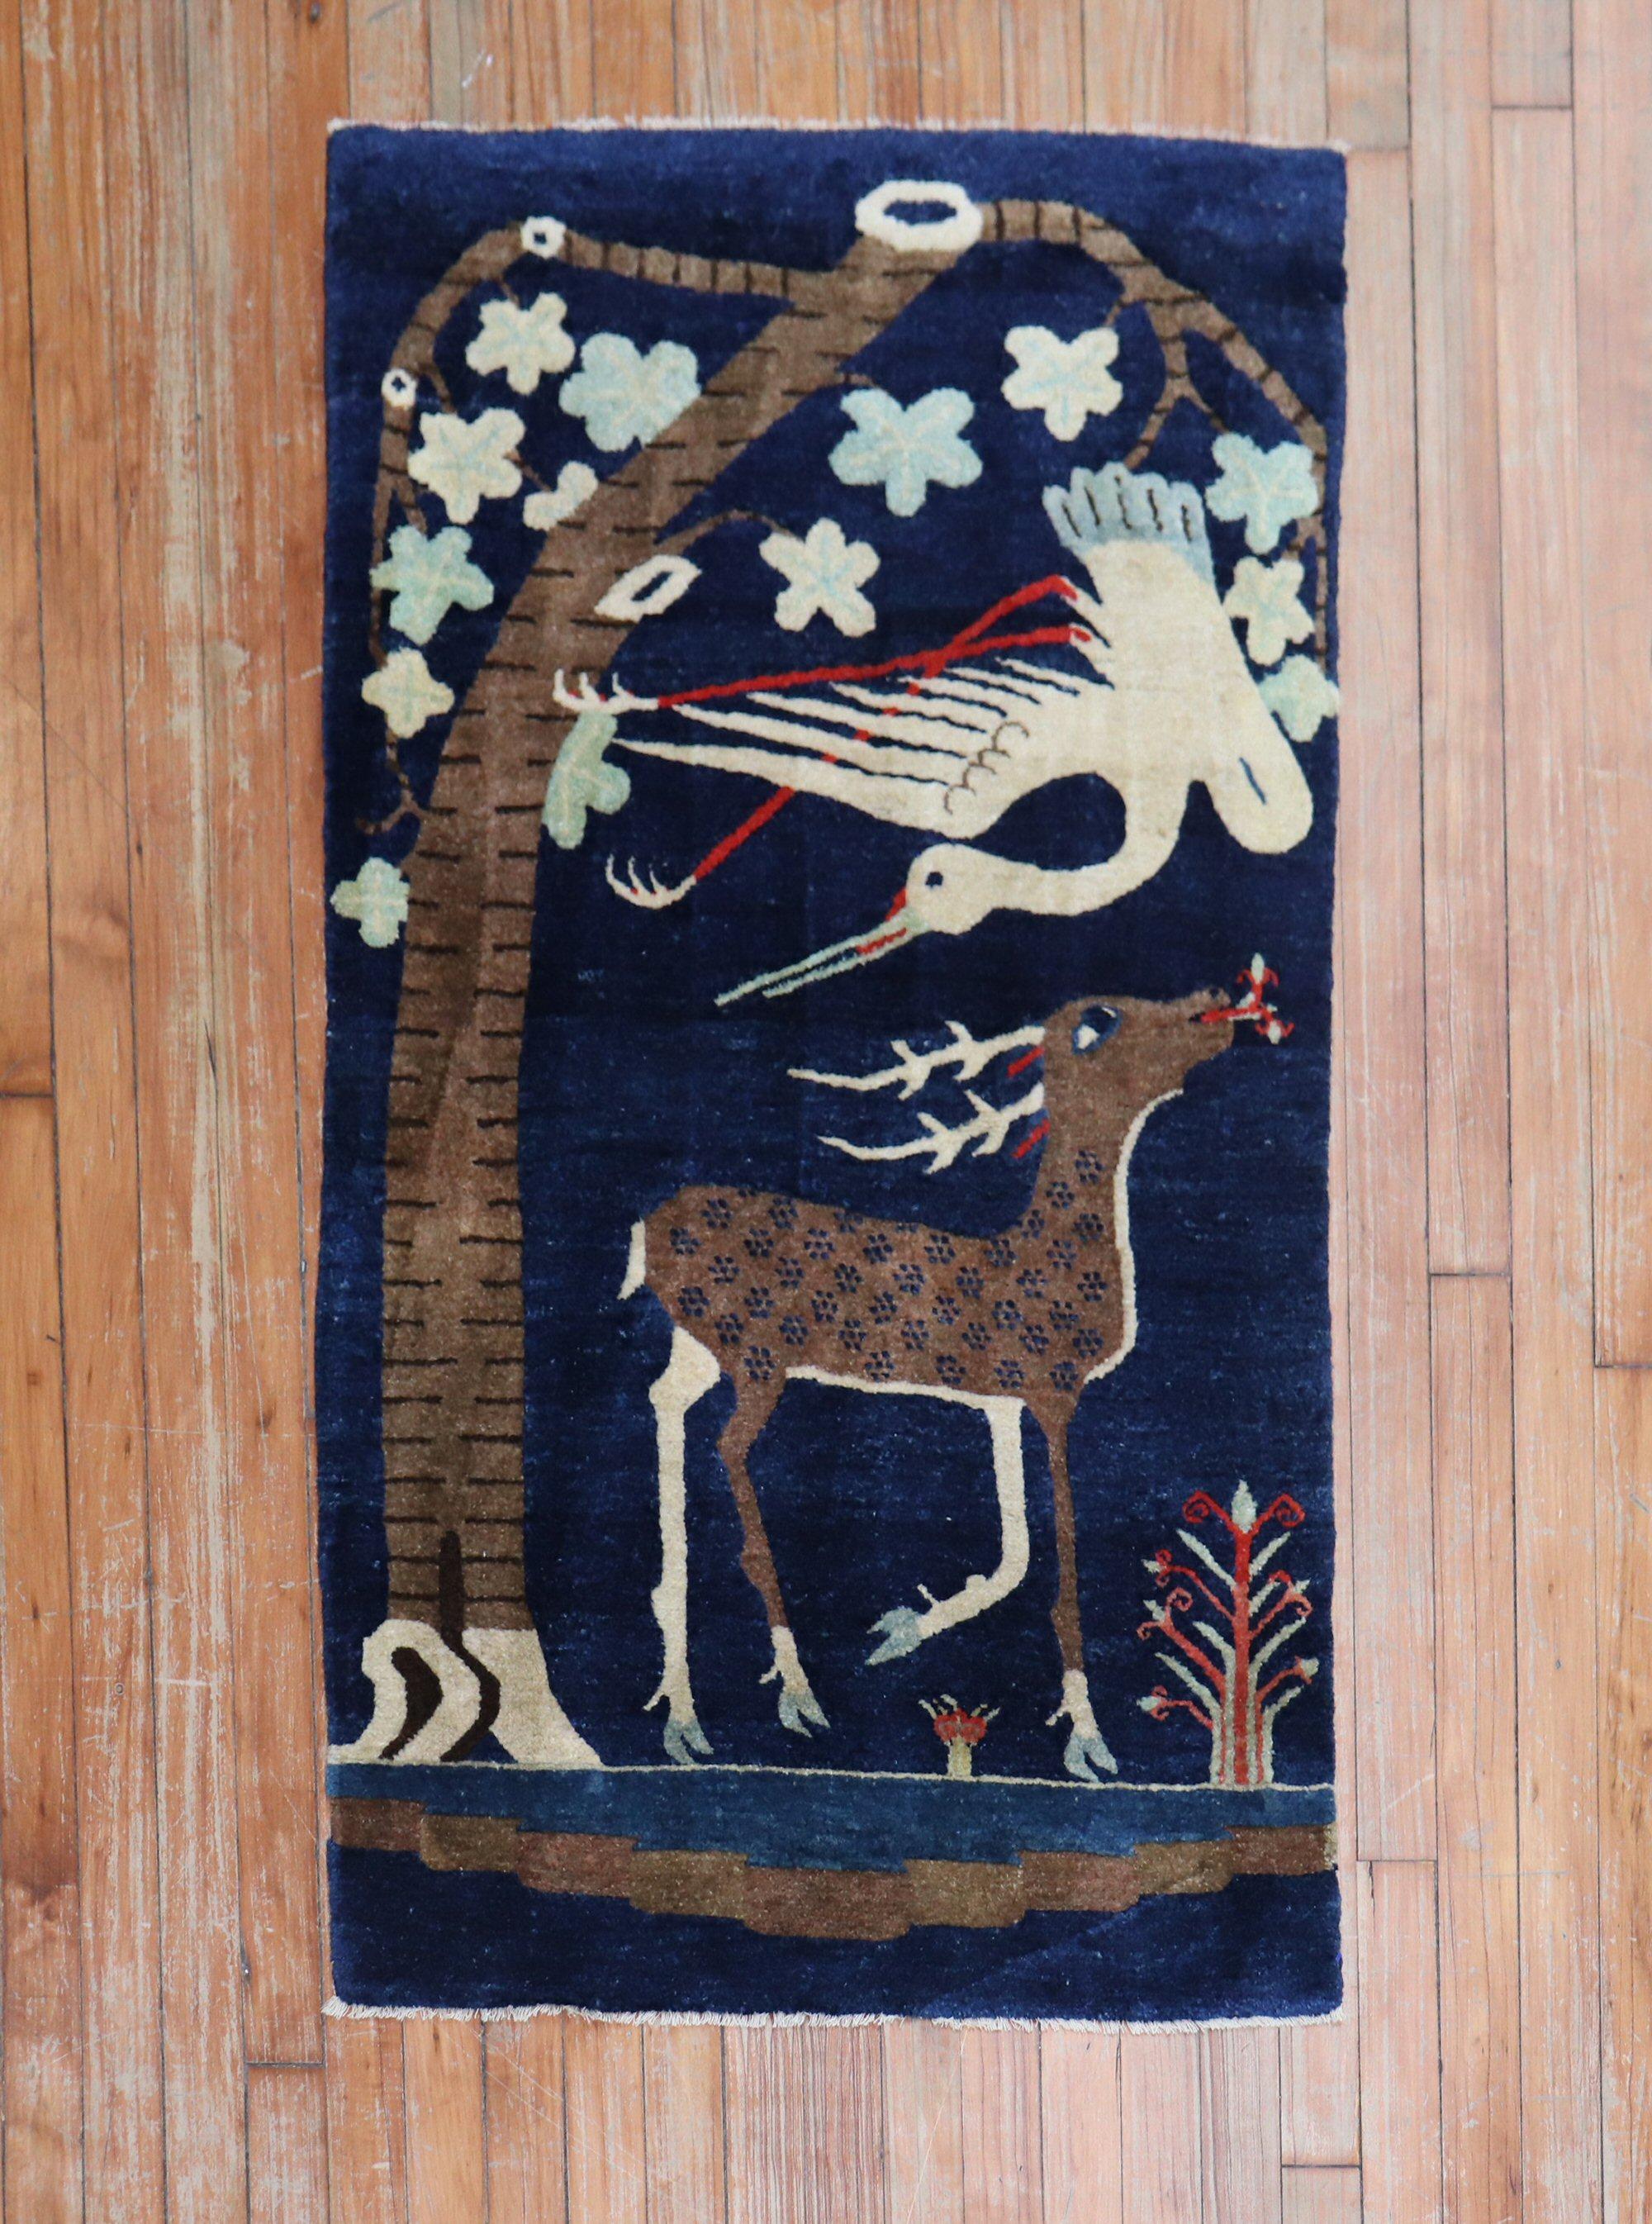 Wunderschöner chinesischer Bildteppich aus den 1930er Jahren mit einem großen Hirsch und einem Vogel auf tiefblauem Grund

Maße: 2'5